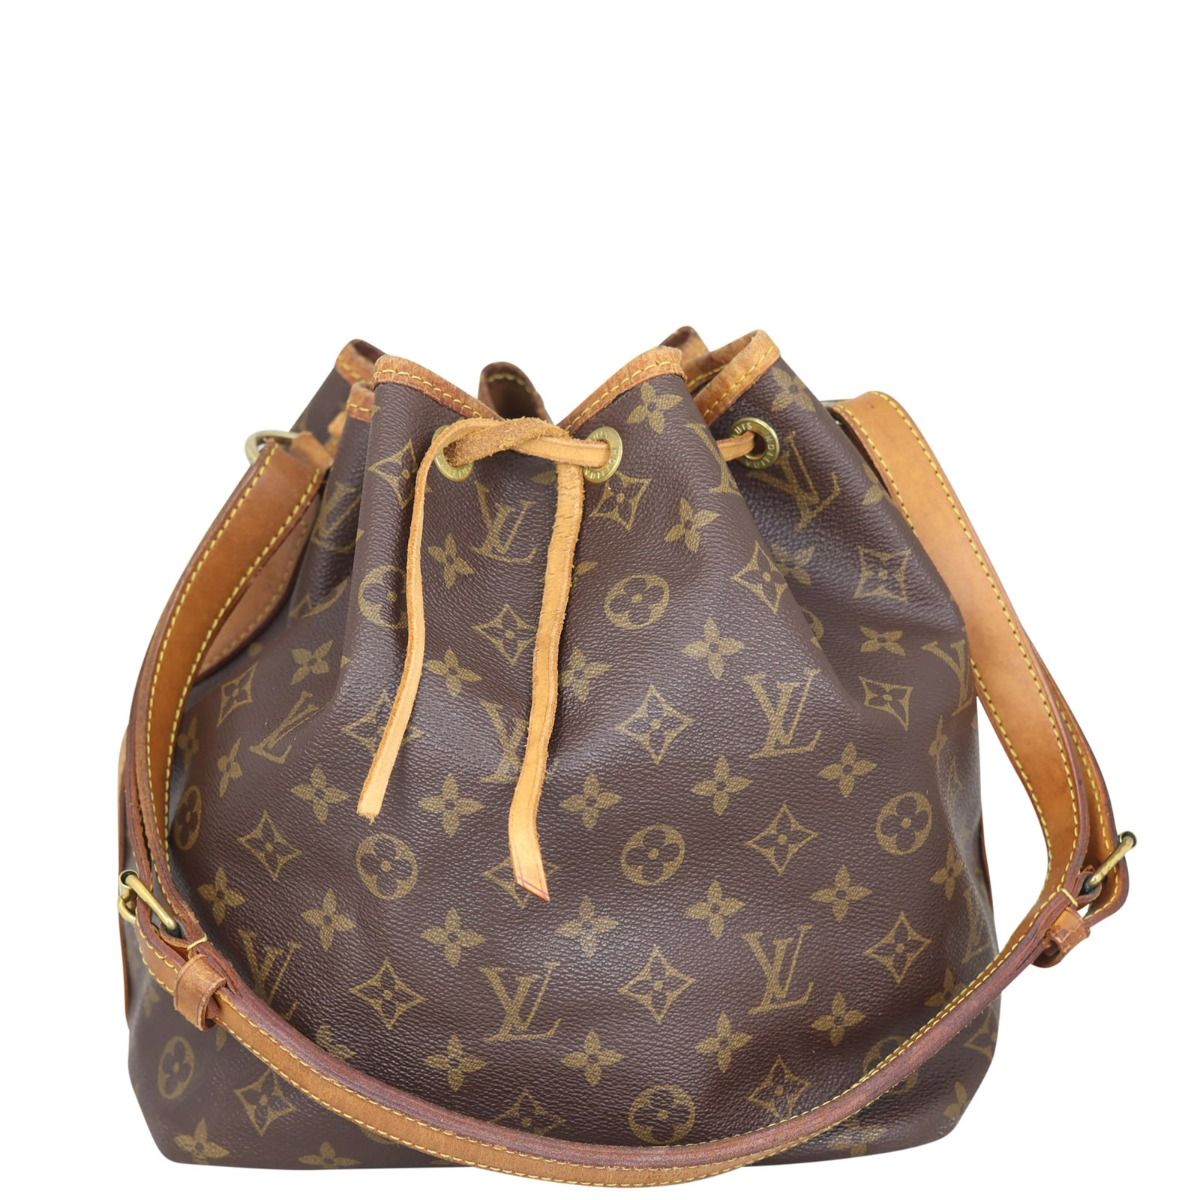 Authentic Louis Vuitton Noe Monogram Shoulder Bag, 58% OFF